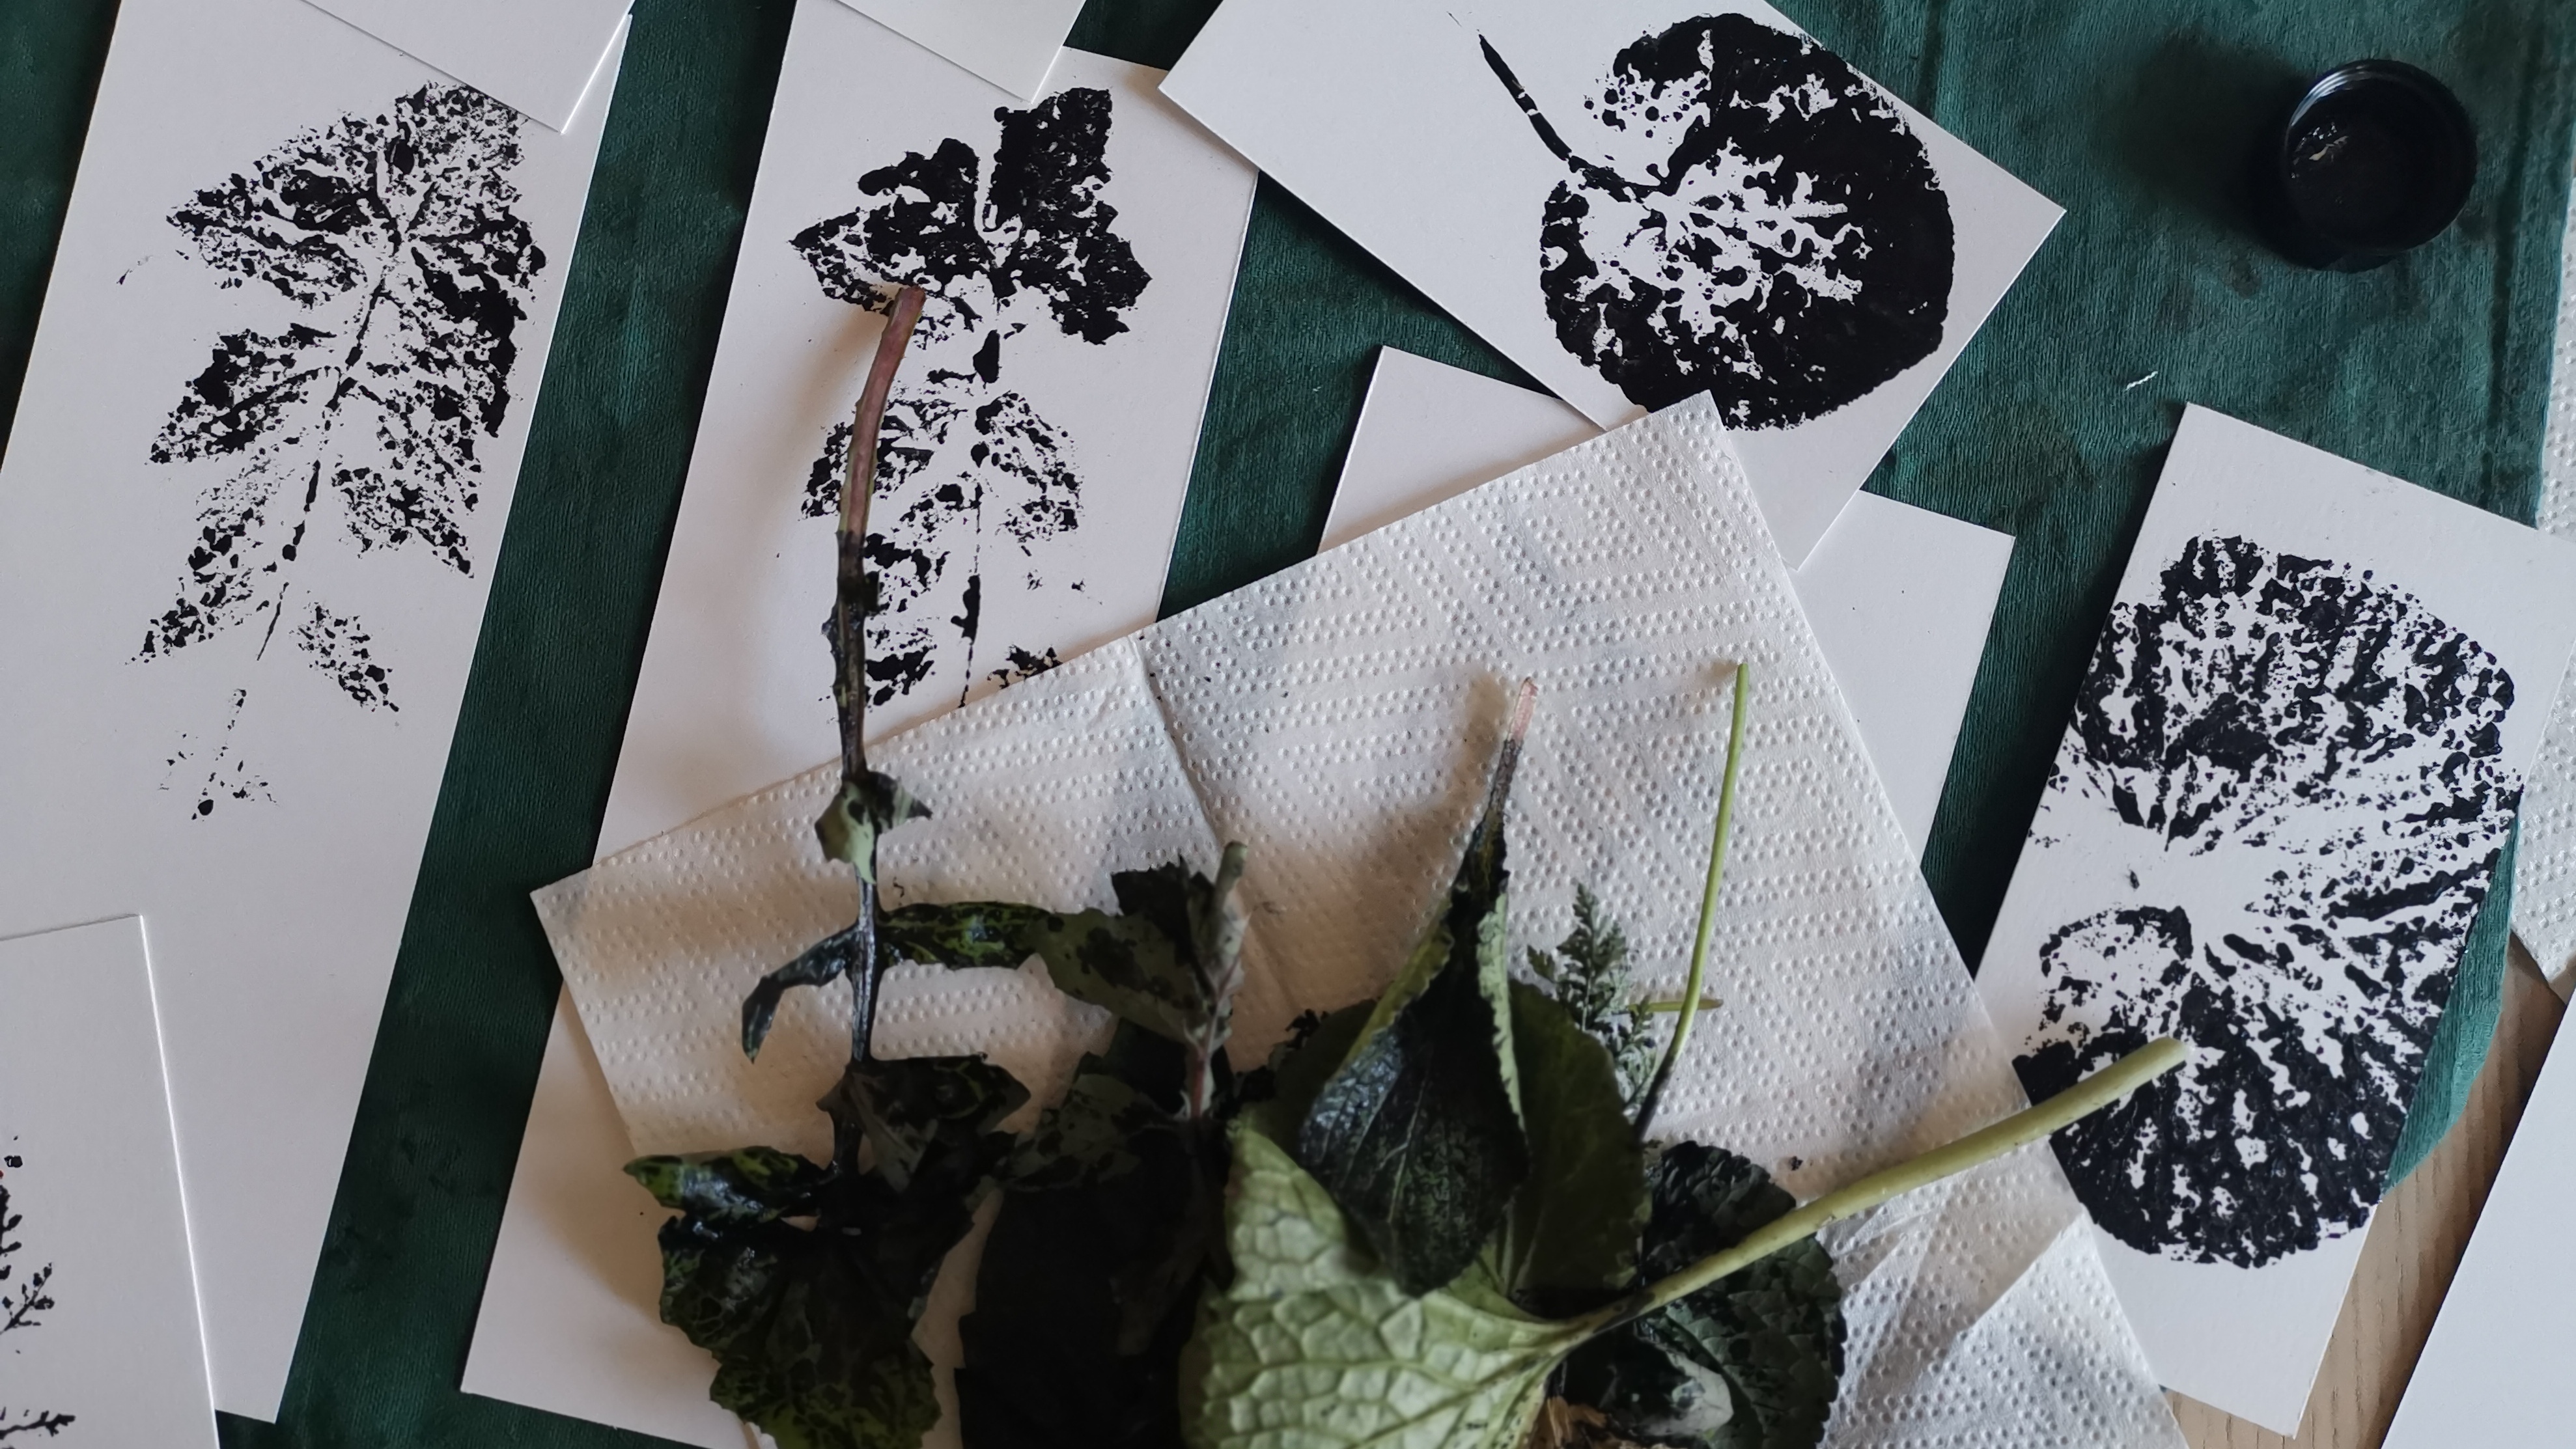 Des estampes de feuilles de pissenlit, violettes et wasabi à l'encre,
posées sur un plan de travail avec les feuilles fraîches qui viennent d'être
utilisées